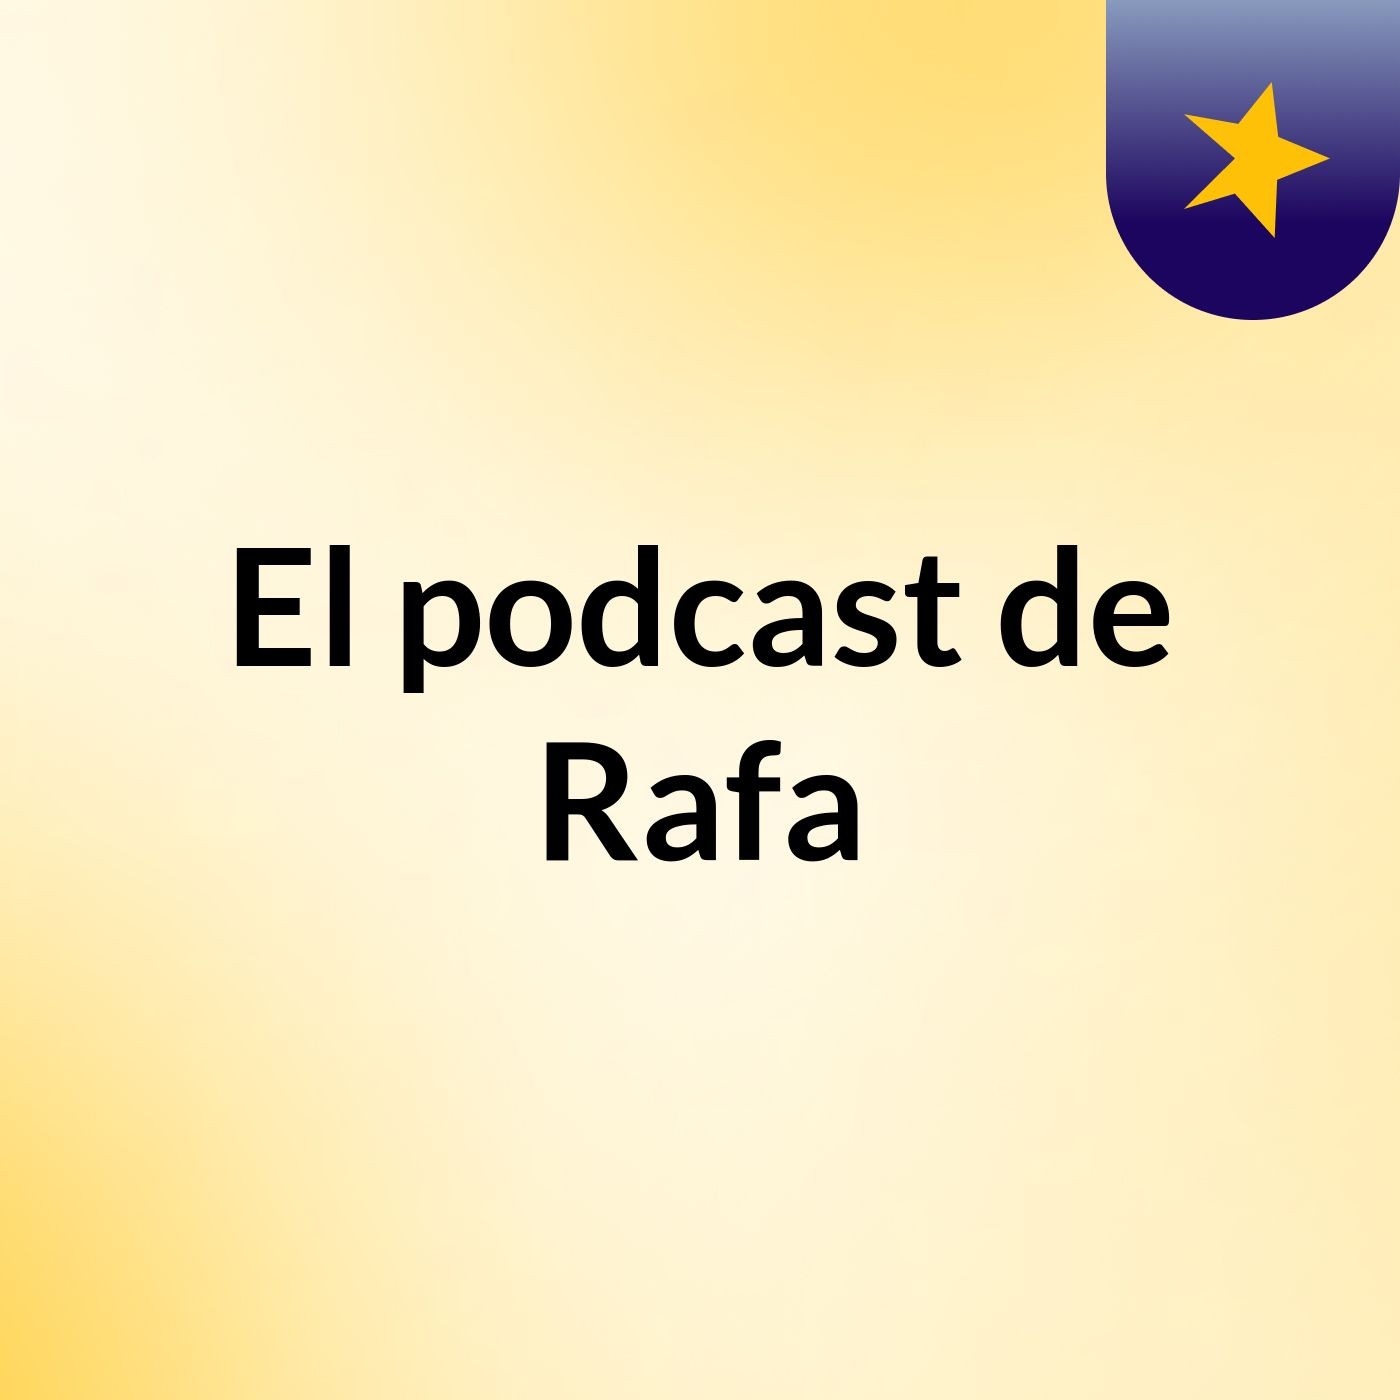 El podcast de Rafa